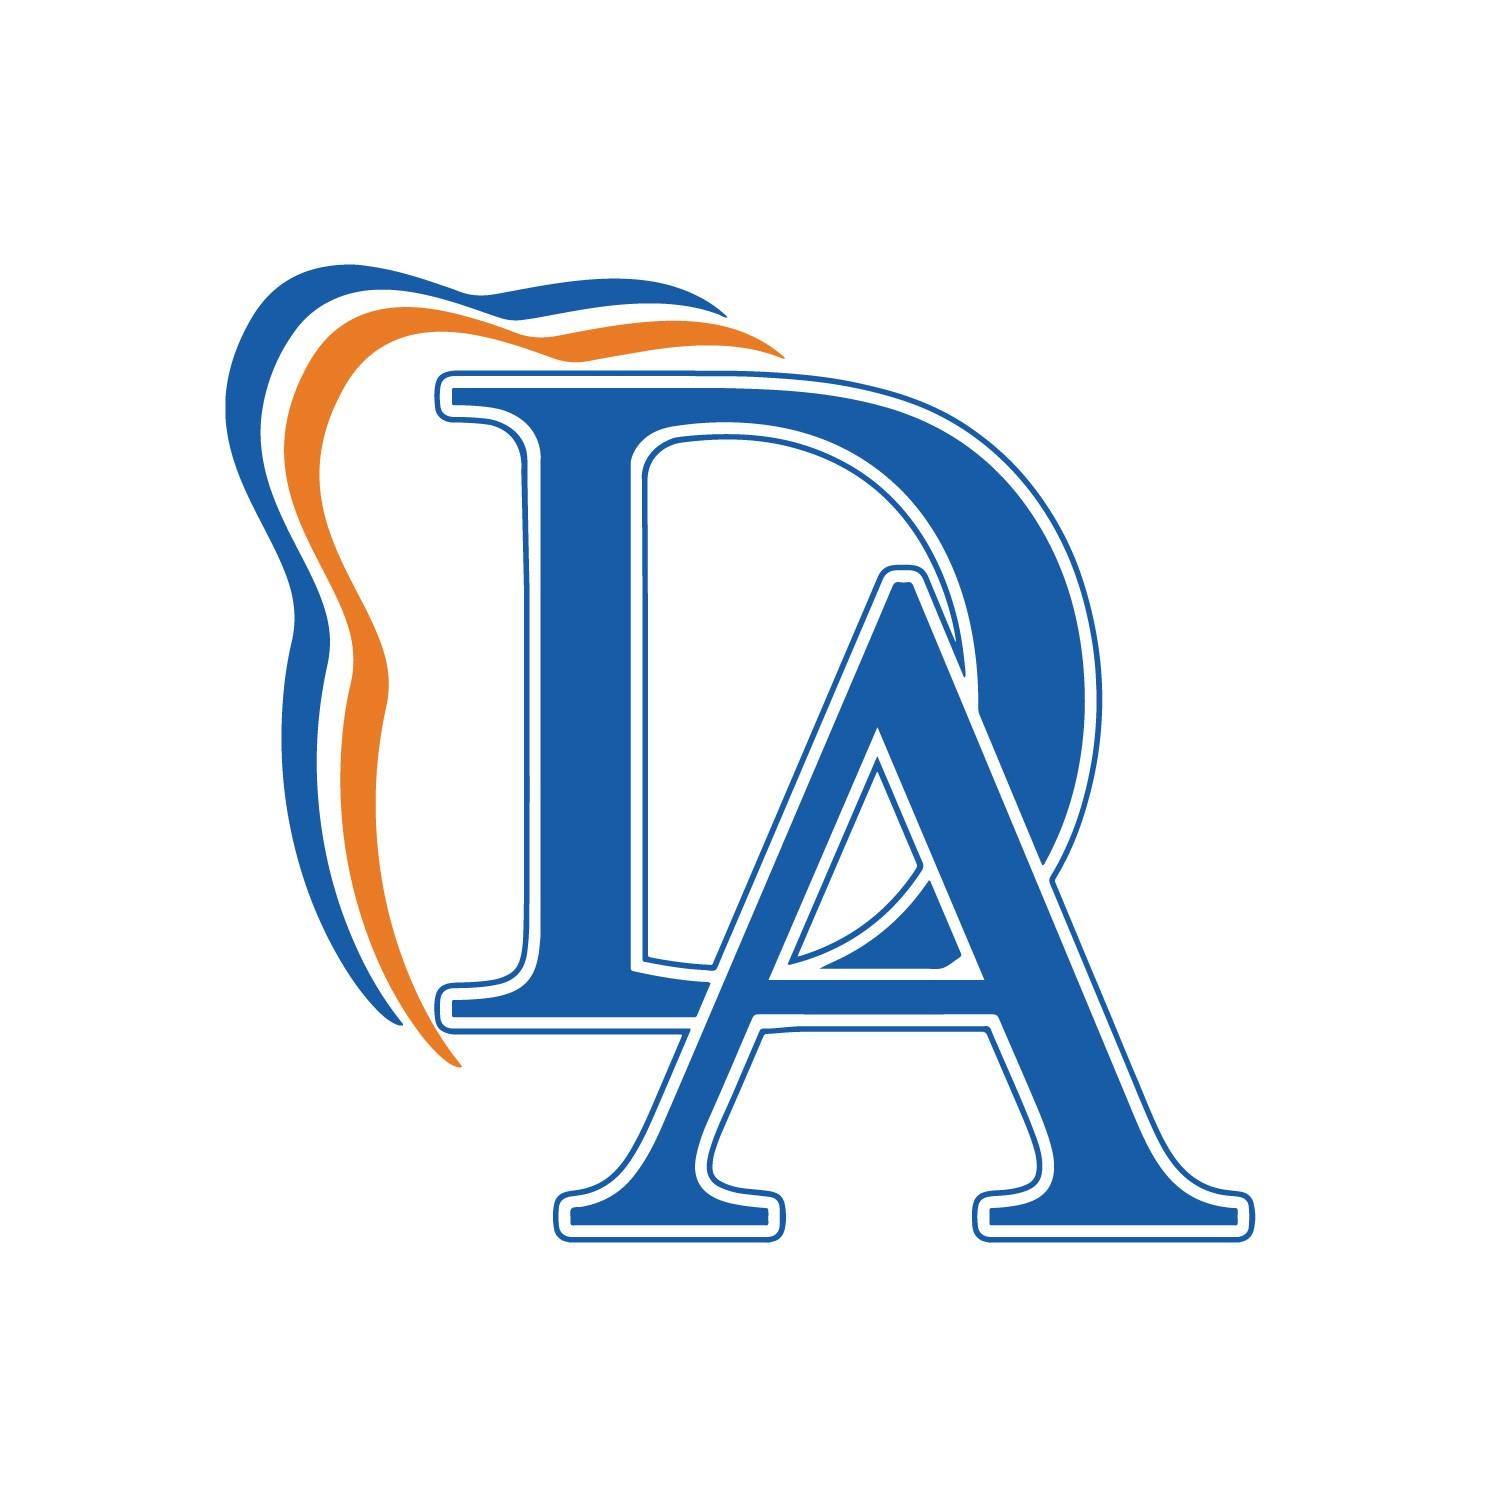 Company logo of Dental Associates of Florida